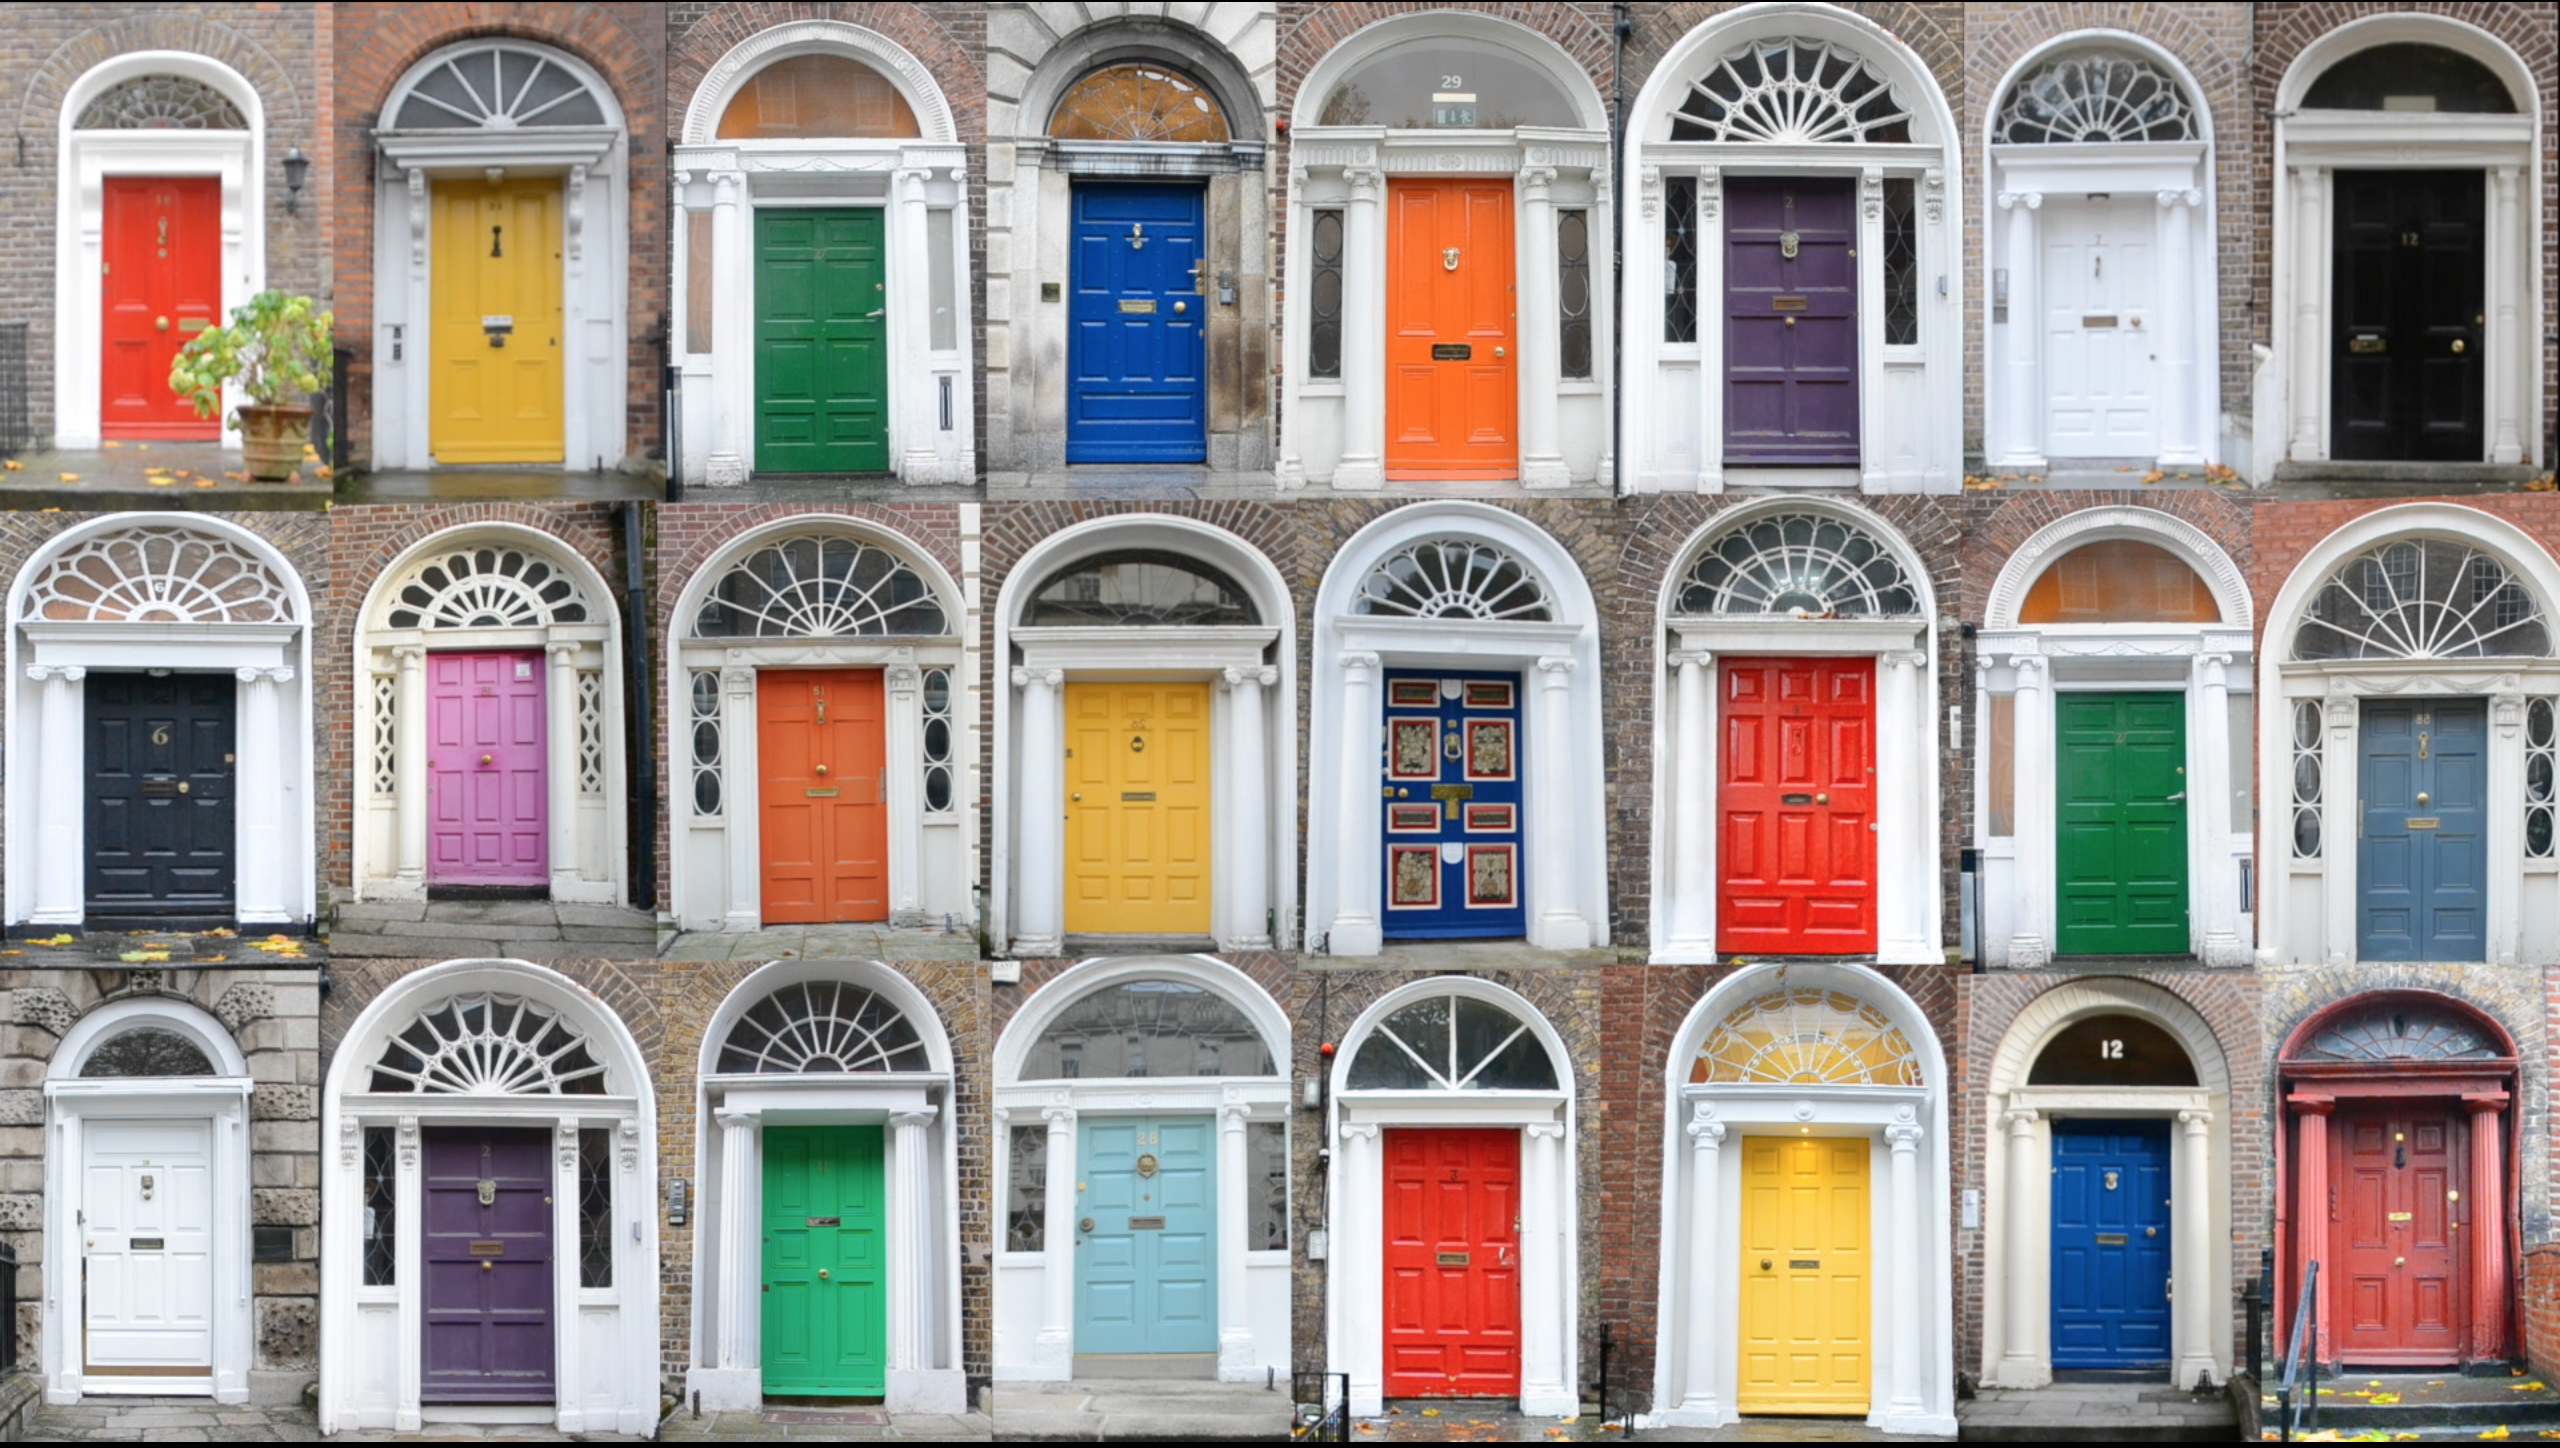 Двери куч. Дверь Дублин. Много дверей. Разноцветные двери в Ирландии. Разноцветные двери.